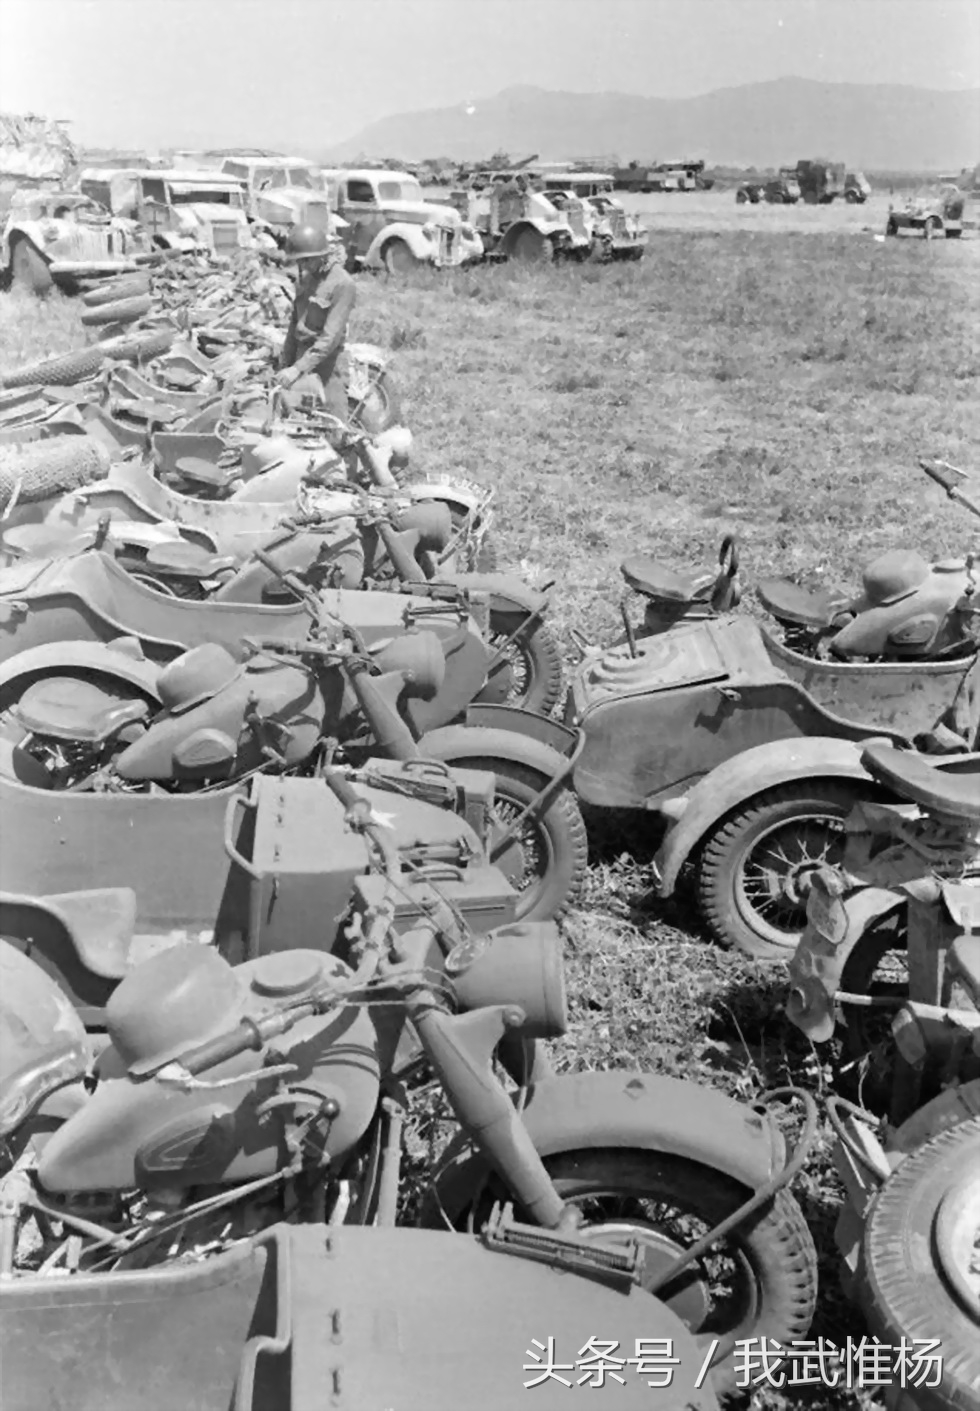 1943年美军展示缴获的德军武器鼓舞军民打击法西斯_搜狐军事_搜狐网